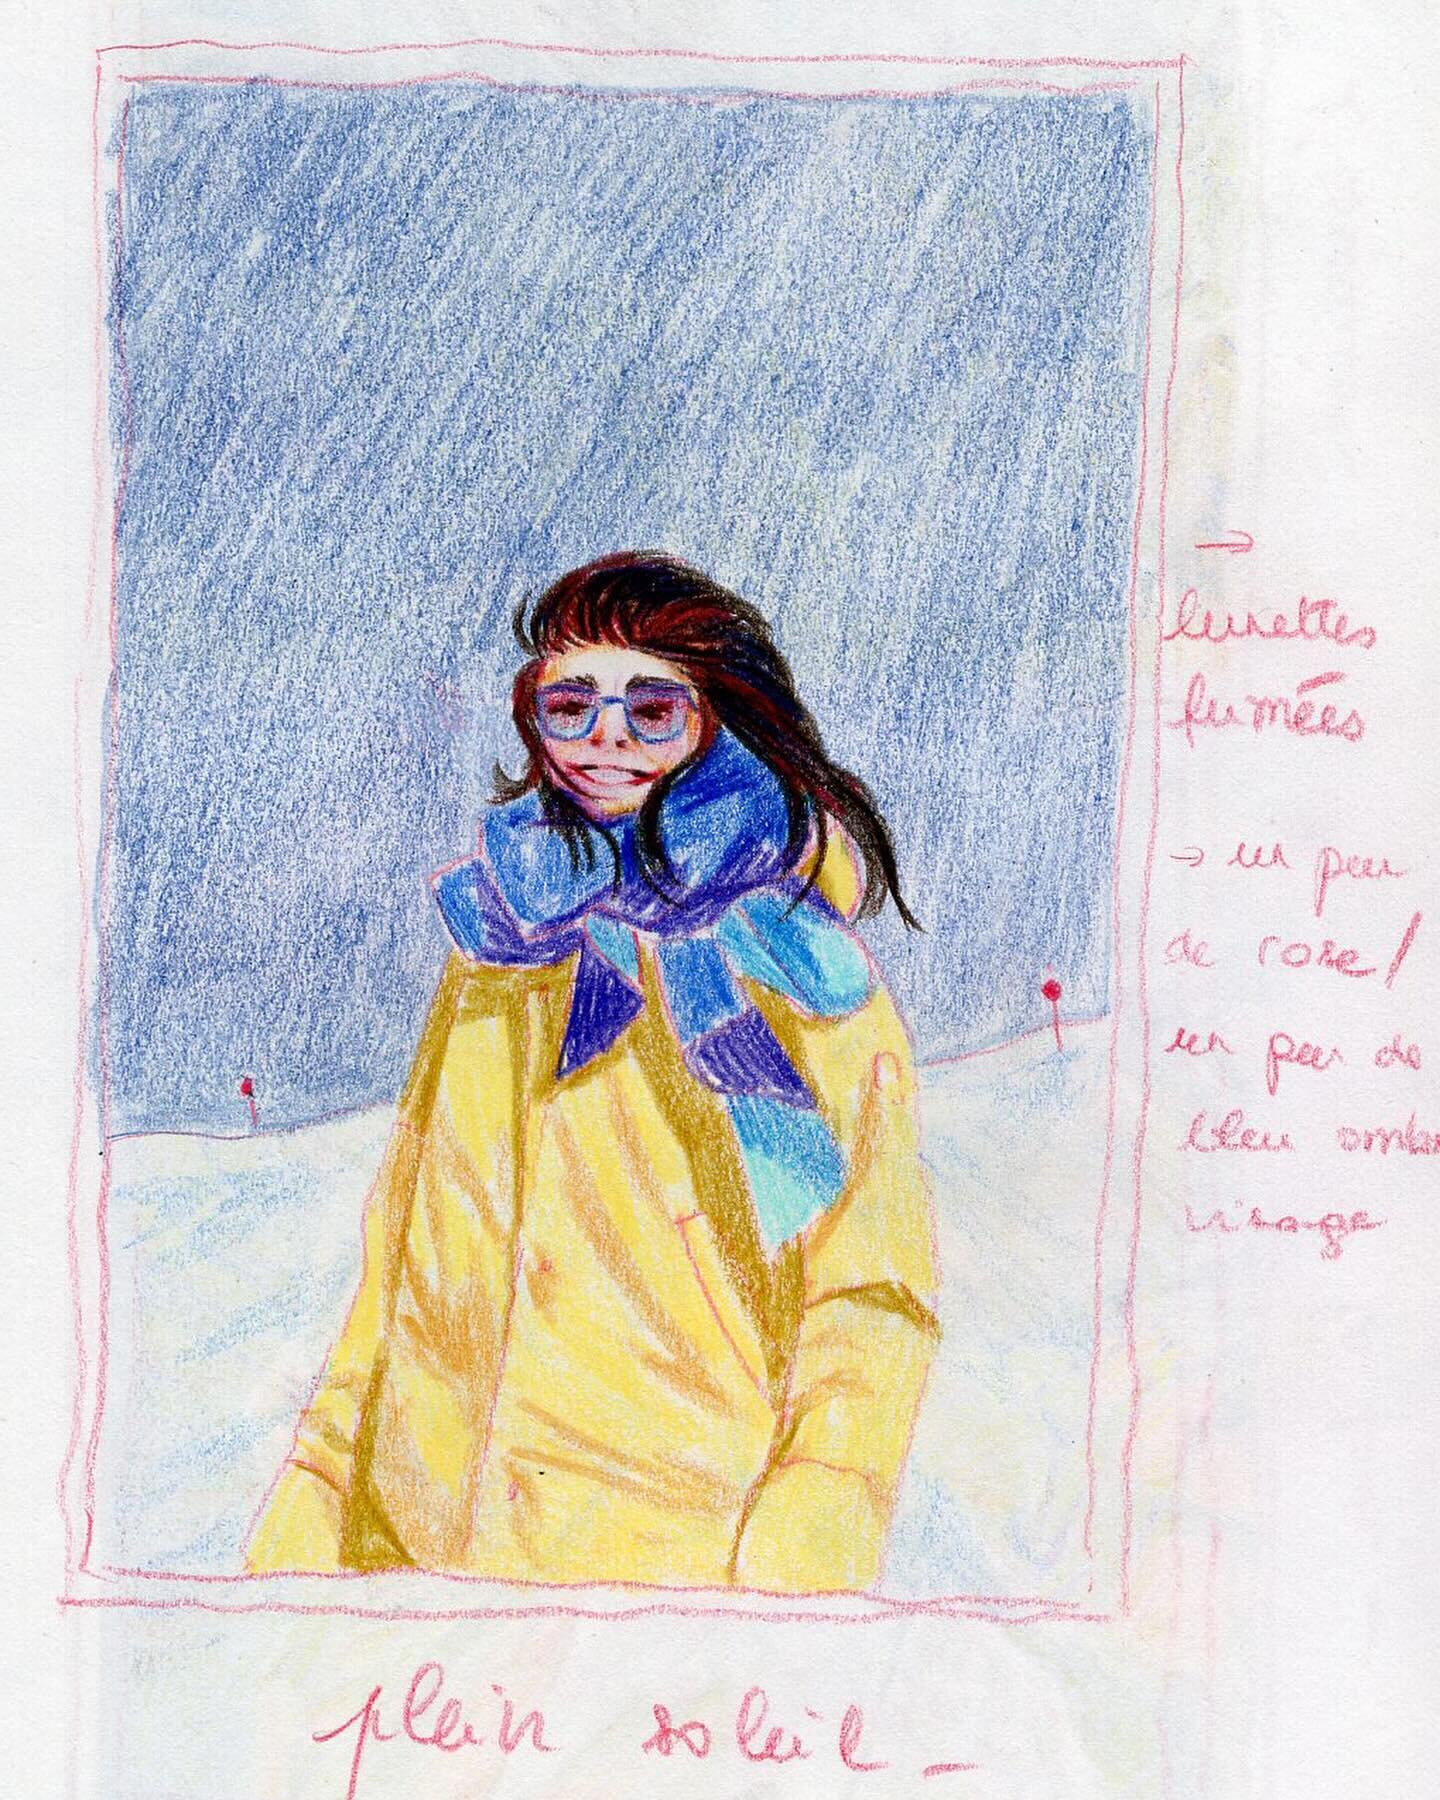 Oui oui on sait, c&rsquo;est le printemps !
Mais certains attendent avec impatience les derniers flocons de la saison ❄️

#drawing #sketching #creativeprocess #illustration #womanart #alps #snow #winterdrawing